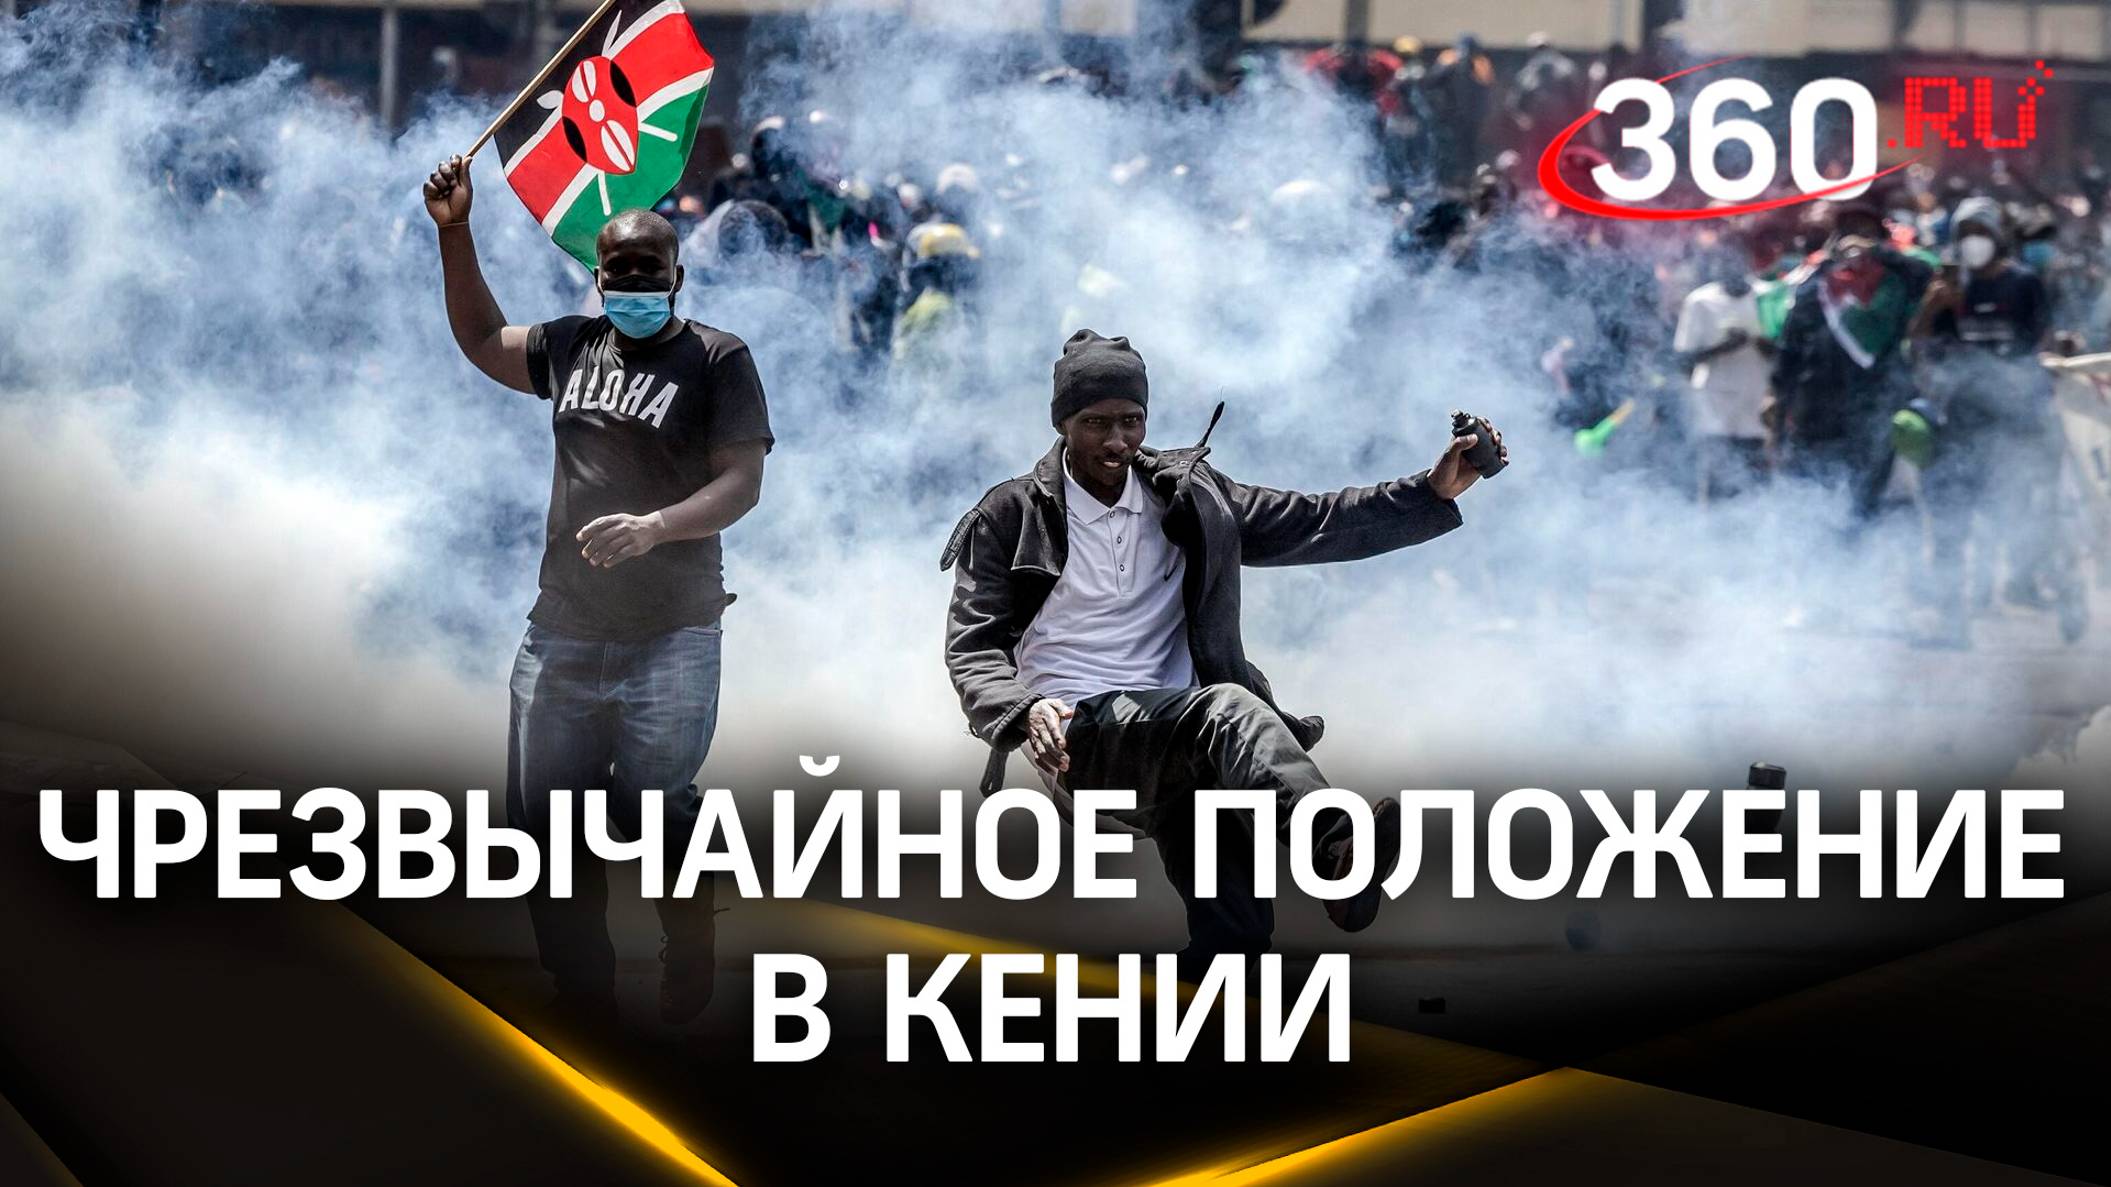 Сожженный парламент и режим ЧС после митингов из-за налогов в Кении. Уже 200 пострадавших